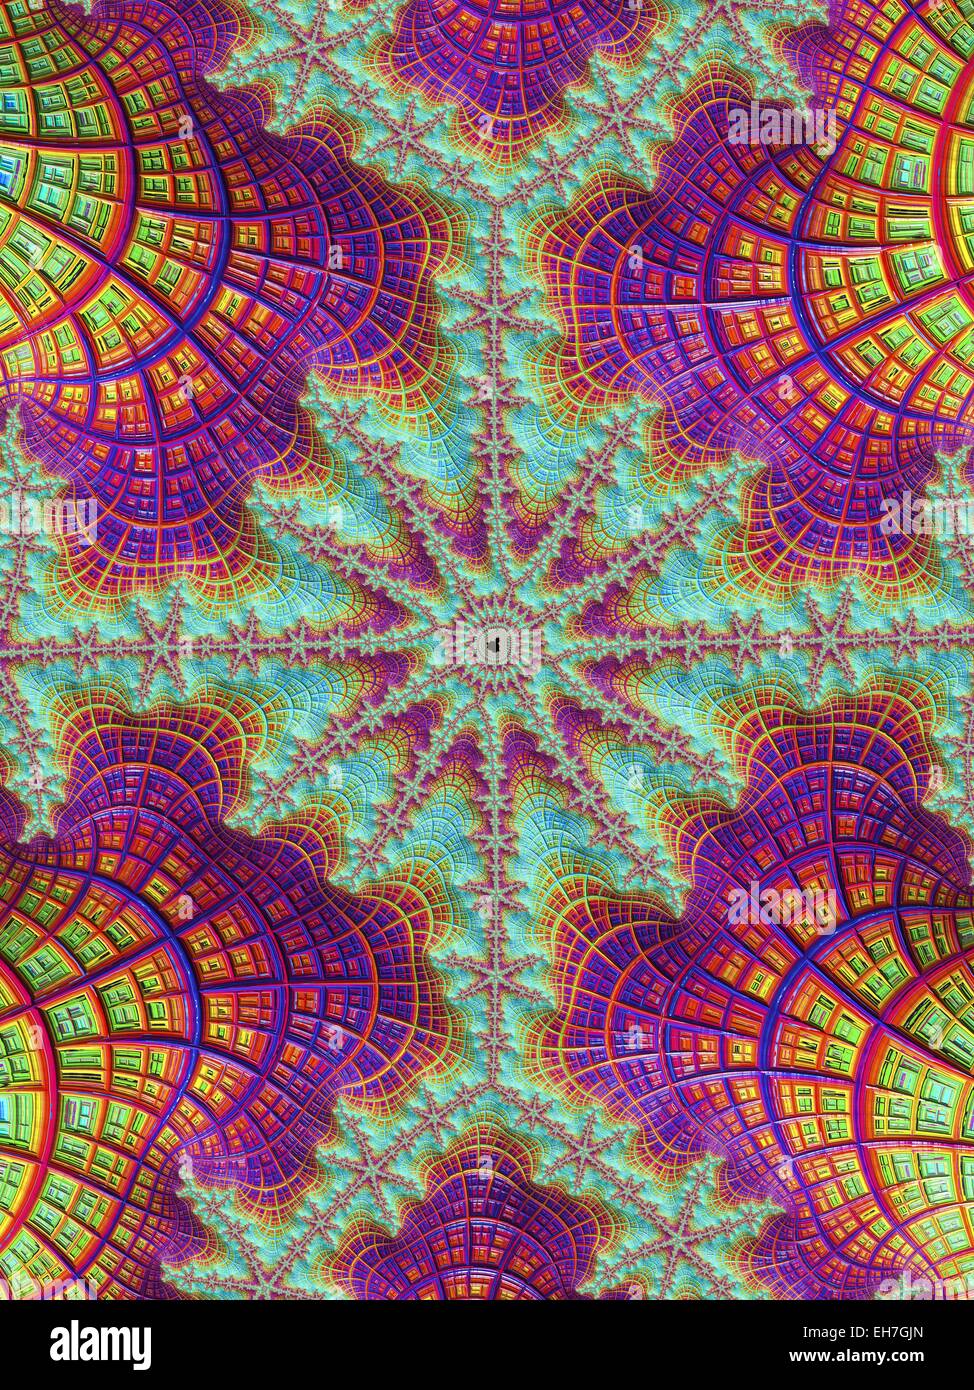 Mandelbrot fractal Stock Photo